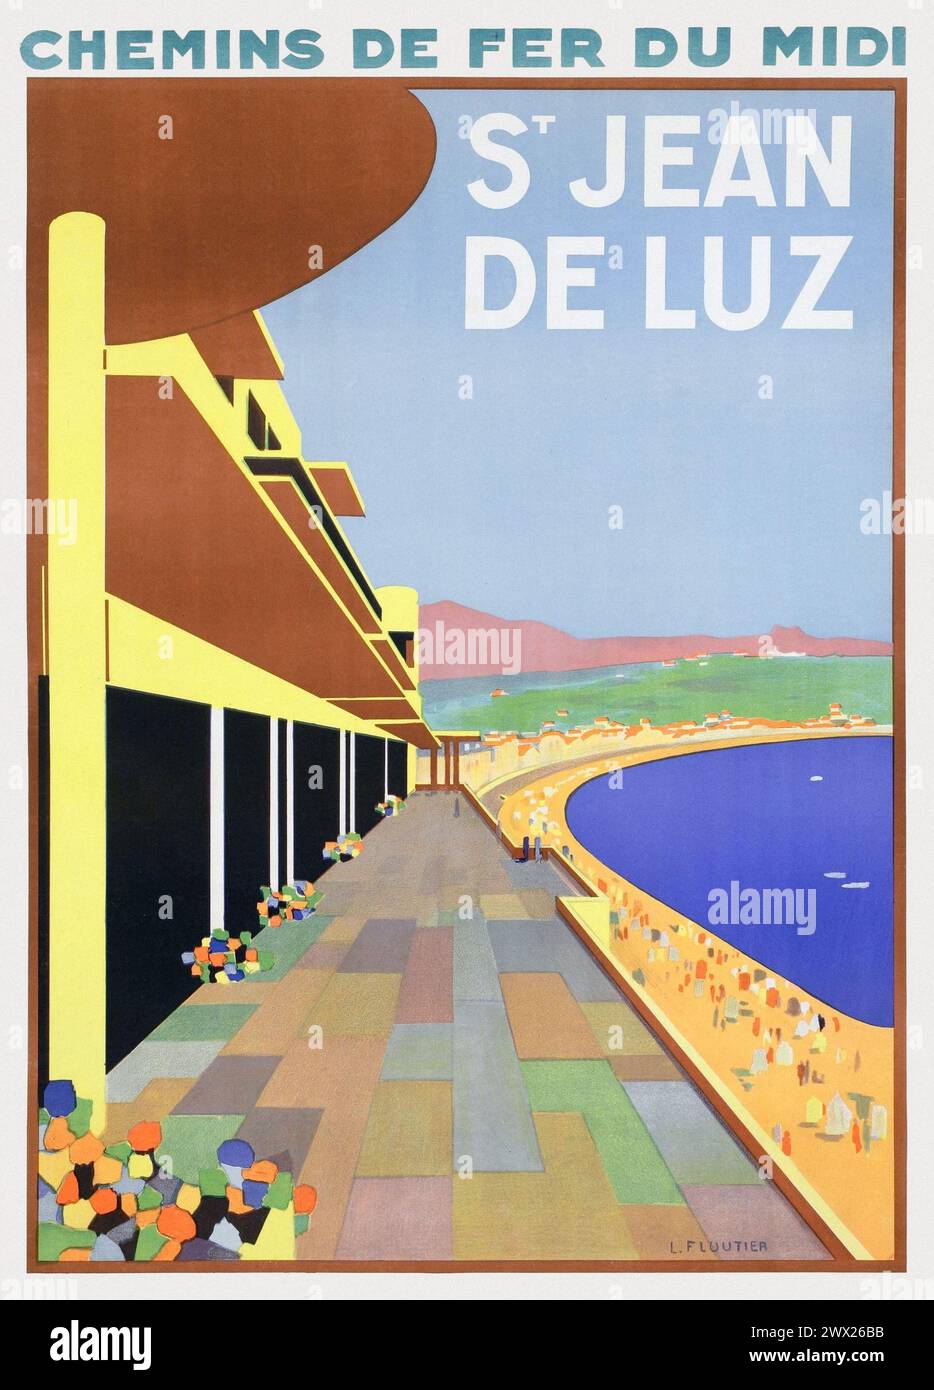 Chemins de fer du Midi. St.Jean de Luz by Louis Floutier (1882-1936). Poster published in 1928 in France. Stock Photo